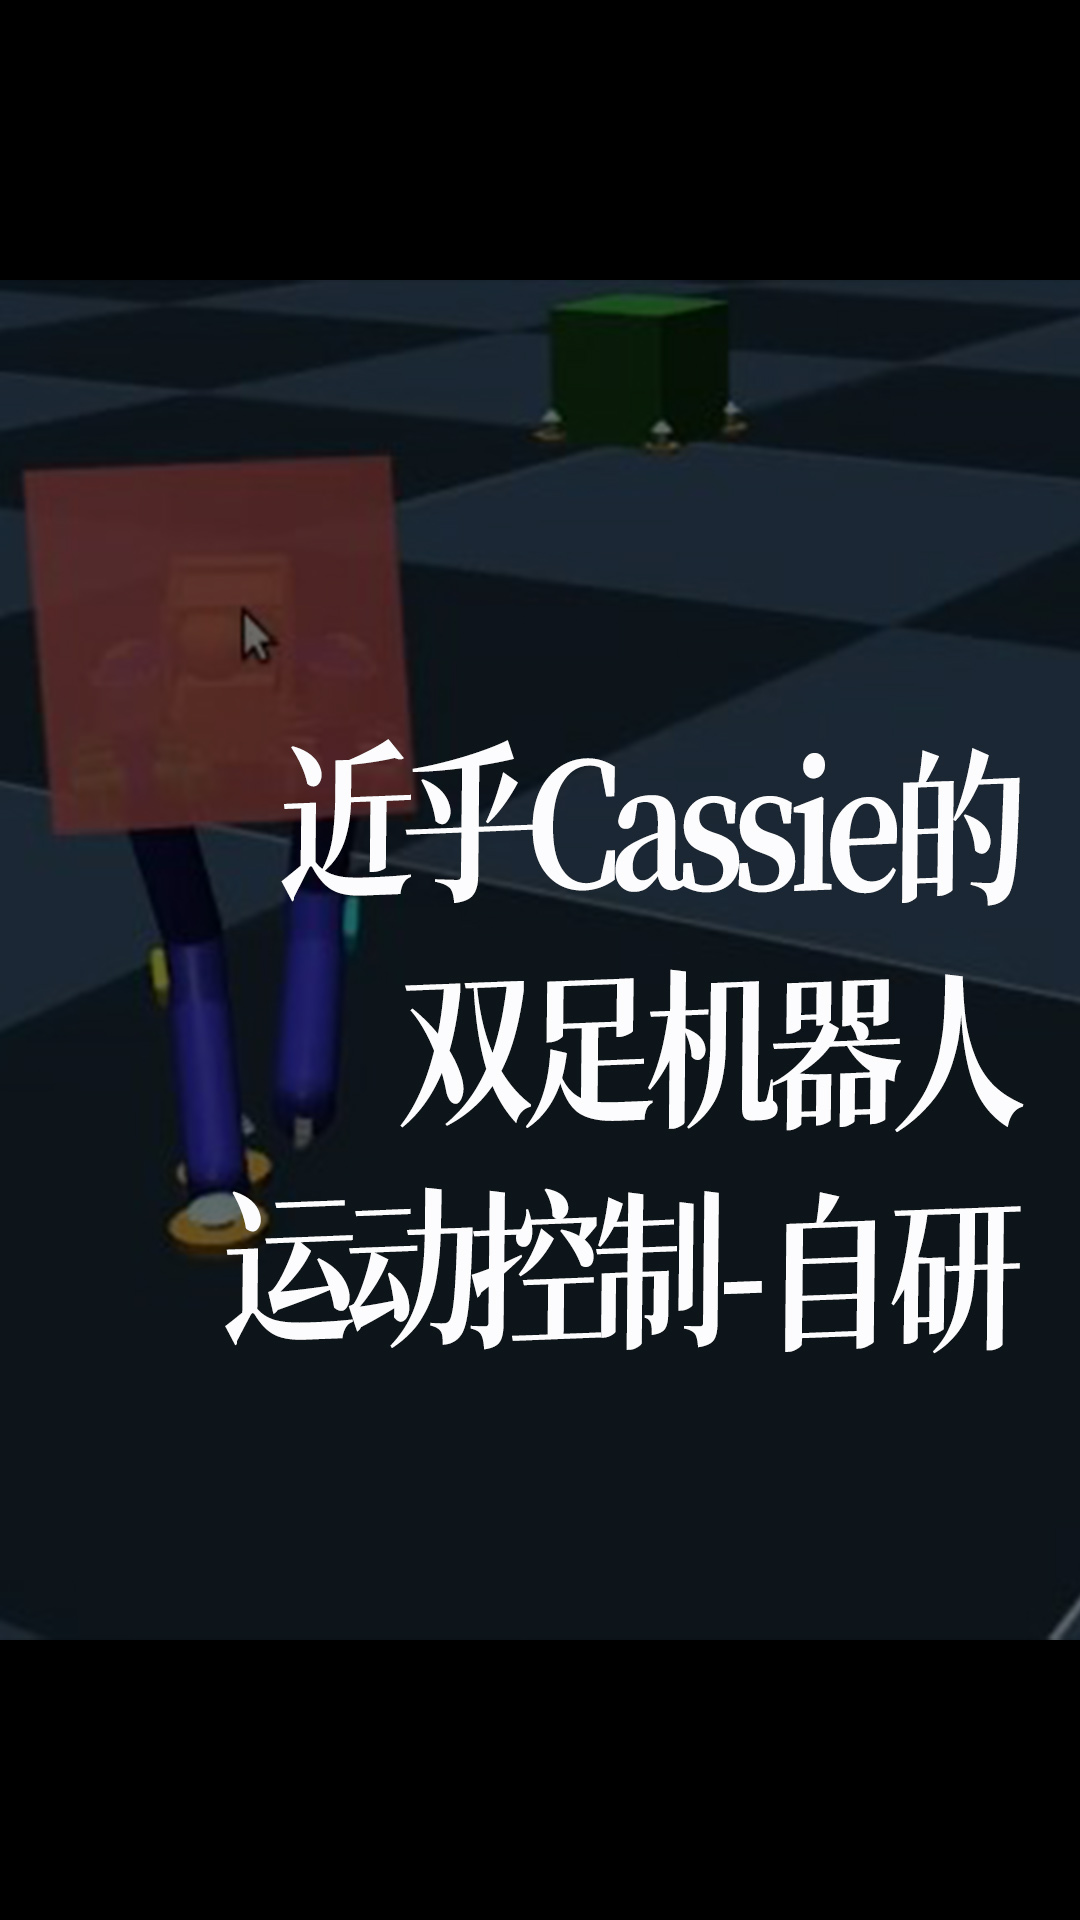 近乎Cassie的双足机器人运动控制-自研